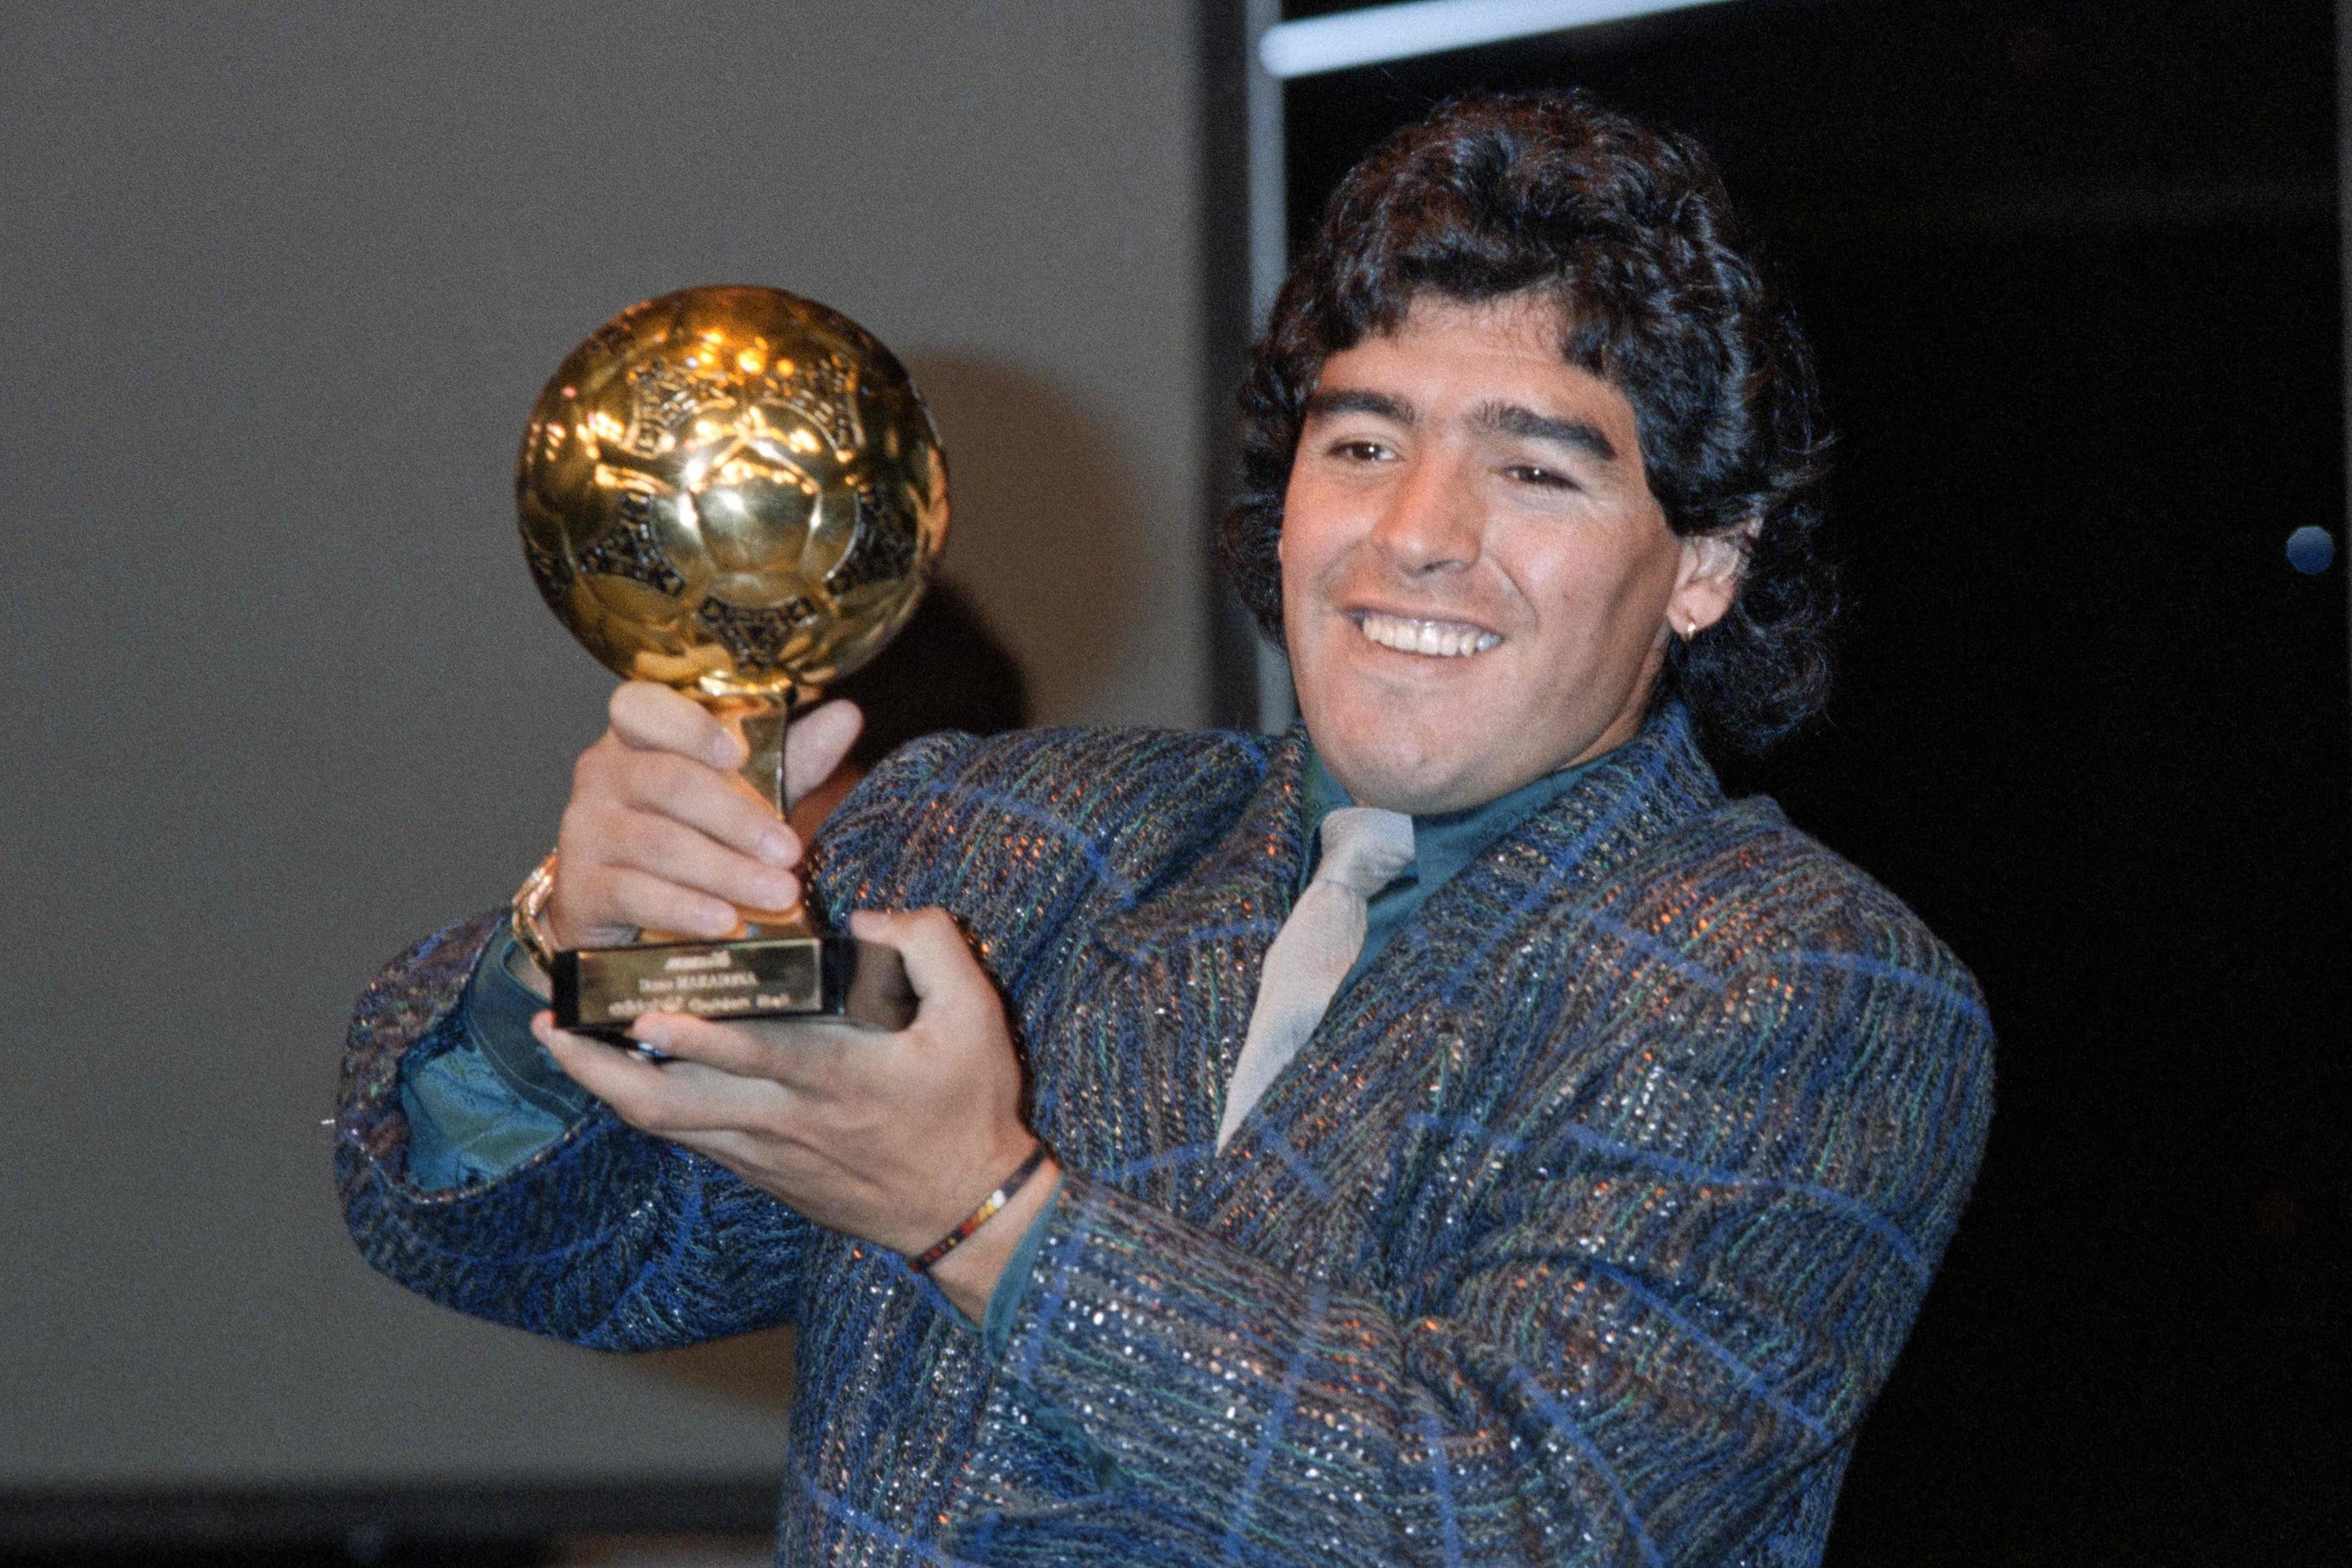 Paris, novembre 1986. Ce trophée honorifique a récompensé Diego Maradona après la victoire de l'Argentine au Mondial 1986 et alors que le Ballon d'or de France Football n'était alors remis qu'aux joueurs européens. AFP/Pascal George